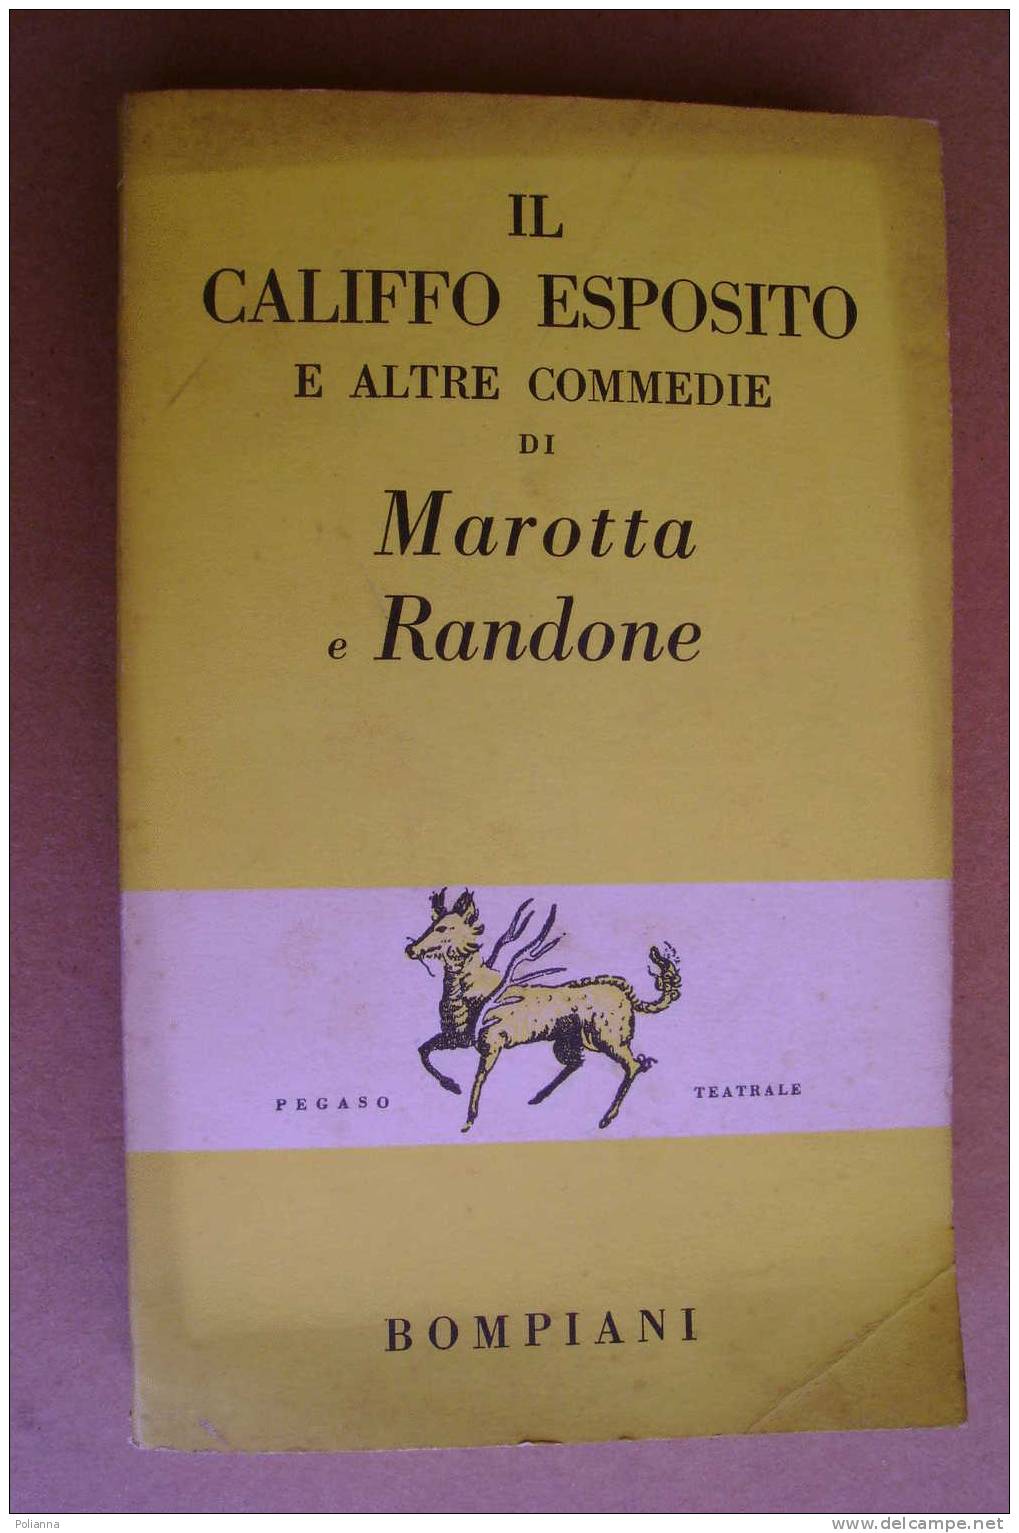 PAO/48 Marotta E Randone IL CALIFFO ESPOSITO Bompiani 1956 - Théâtre